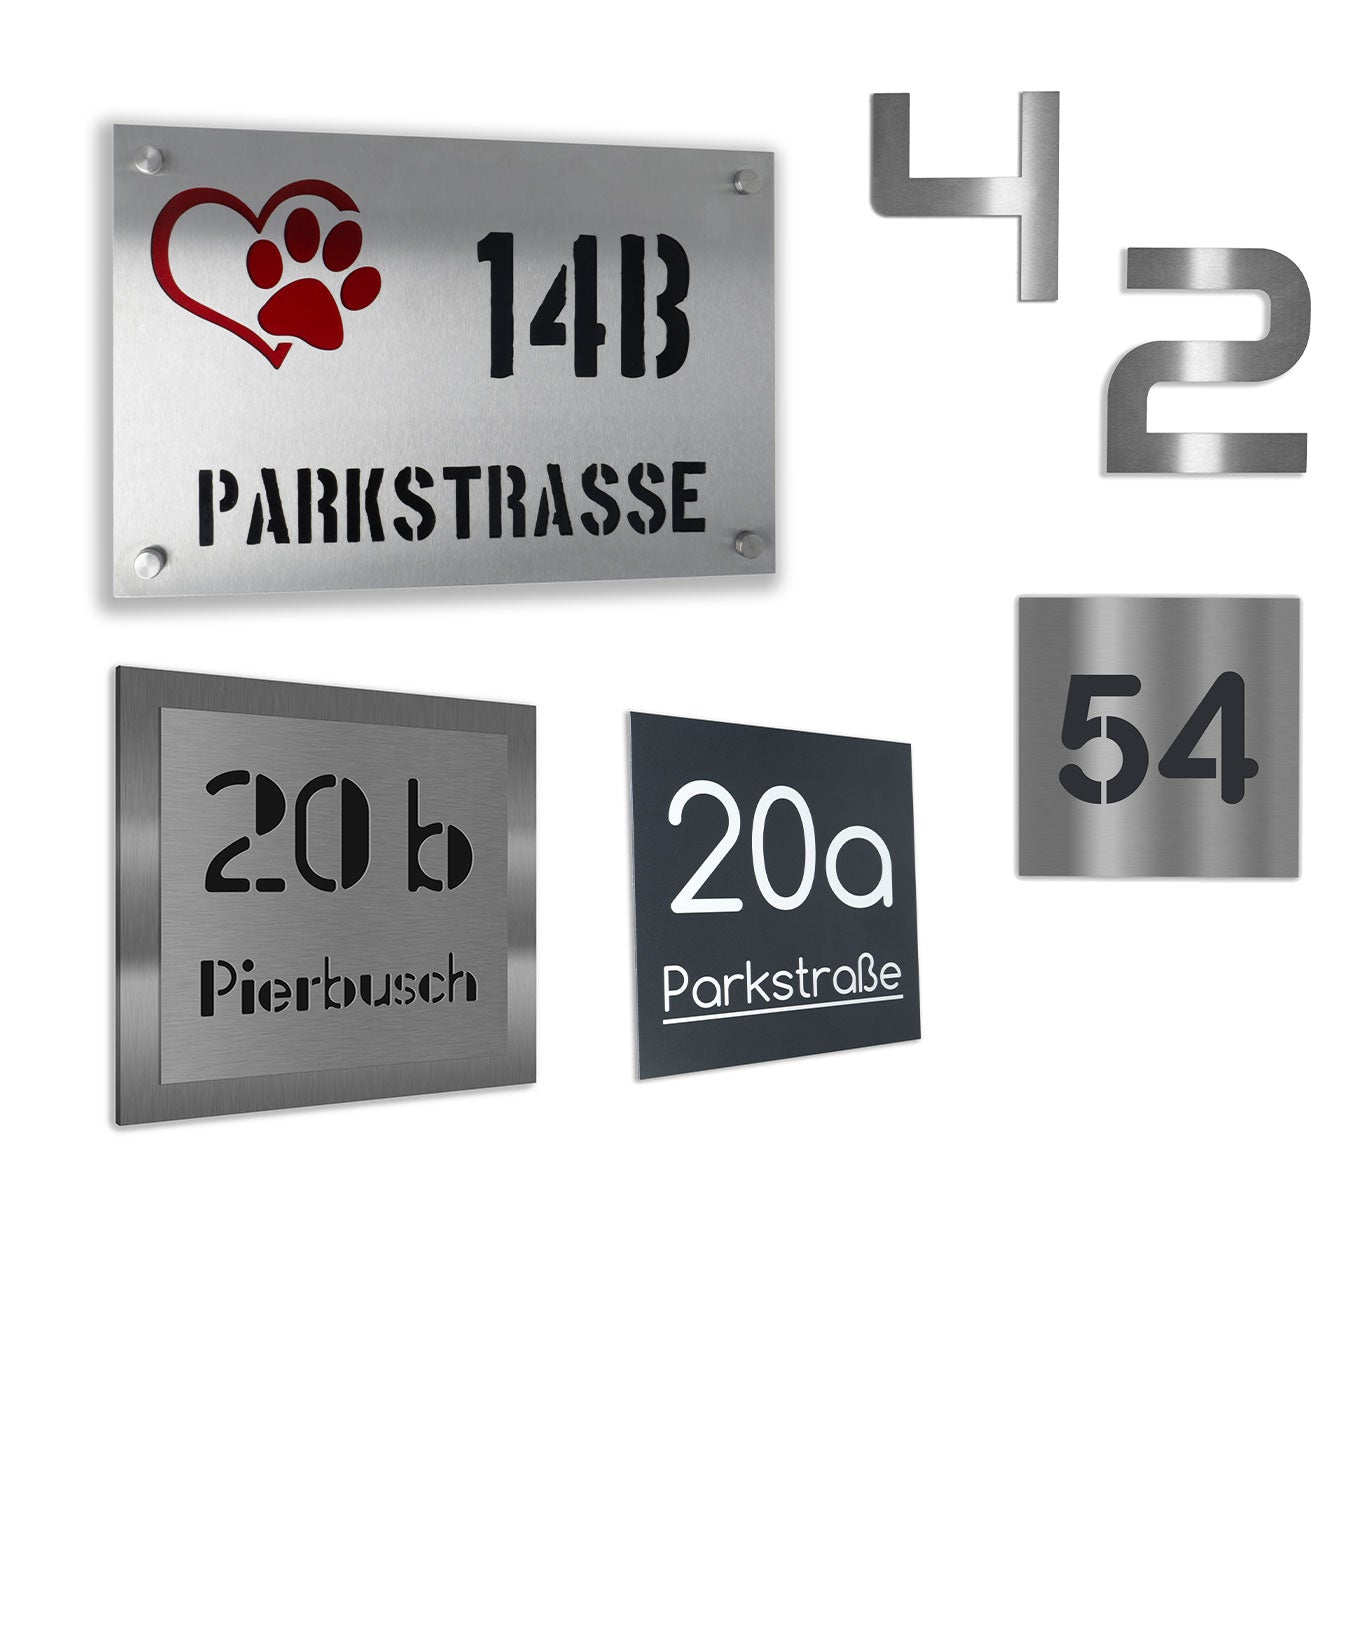 Edelstahl Hausnummern und Hausnummernschilder in verschiedenen Größen